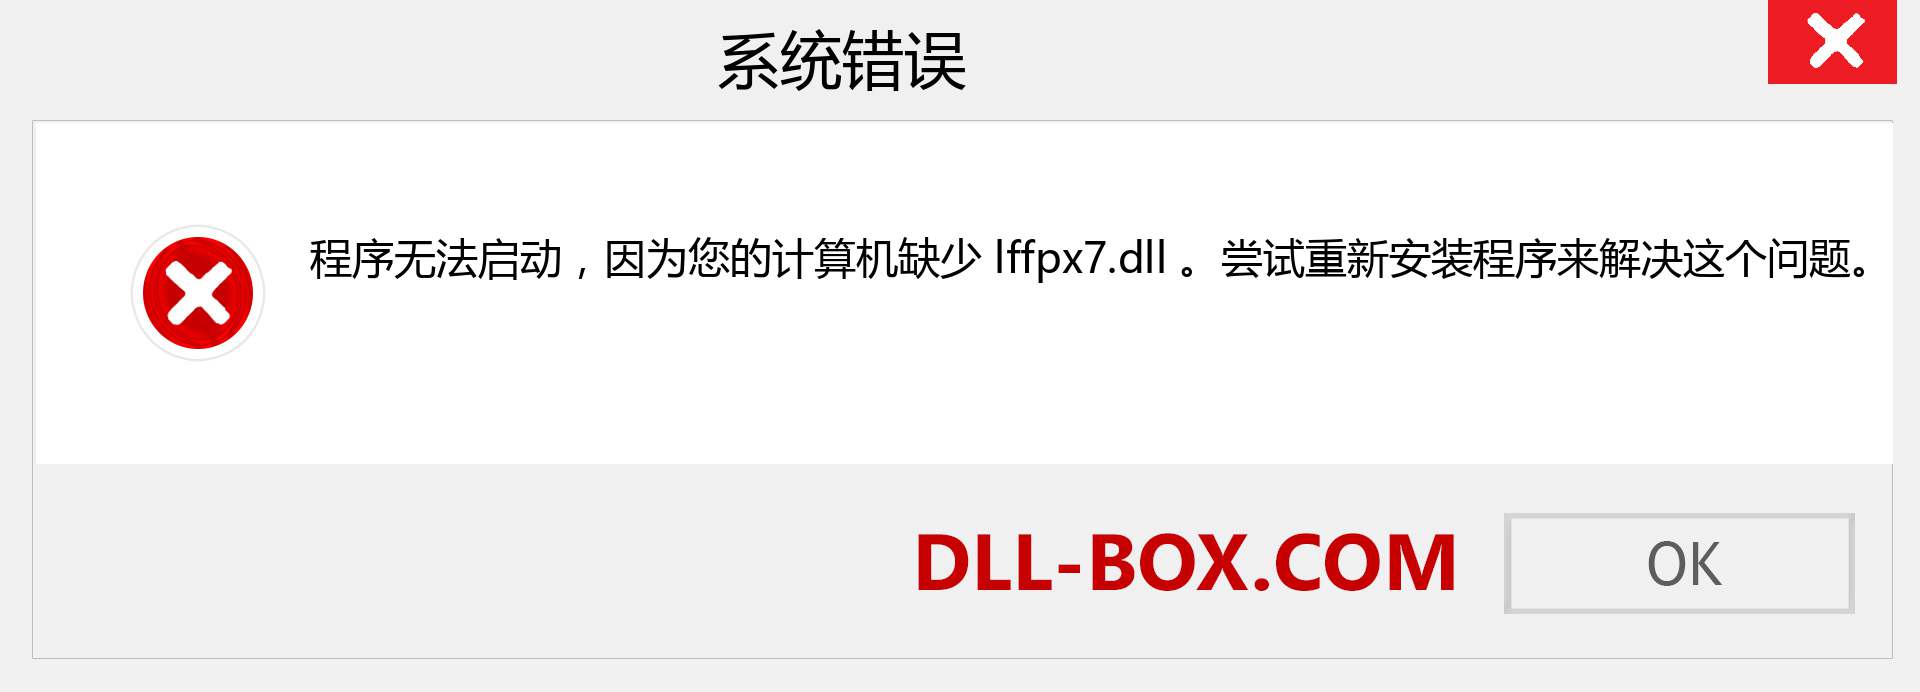 lffpx7.dll 文件丢失？。 适用于 Windows 7、8、10 的下载 - 修复 Windows、照片、图像上的 lffpx7 dll 丢失错误